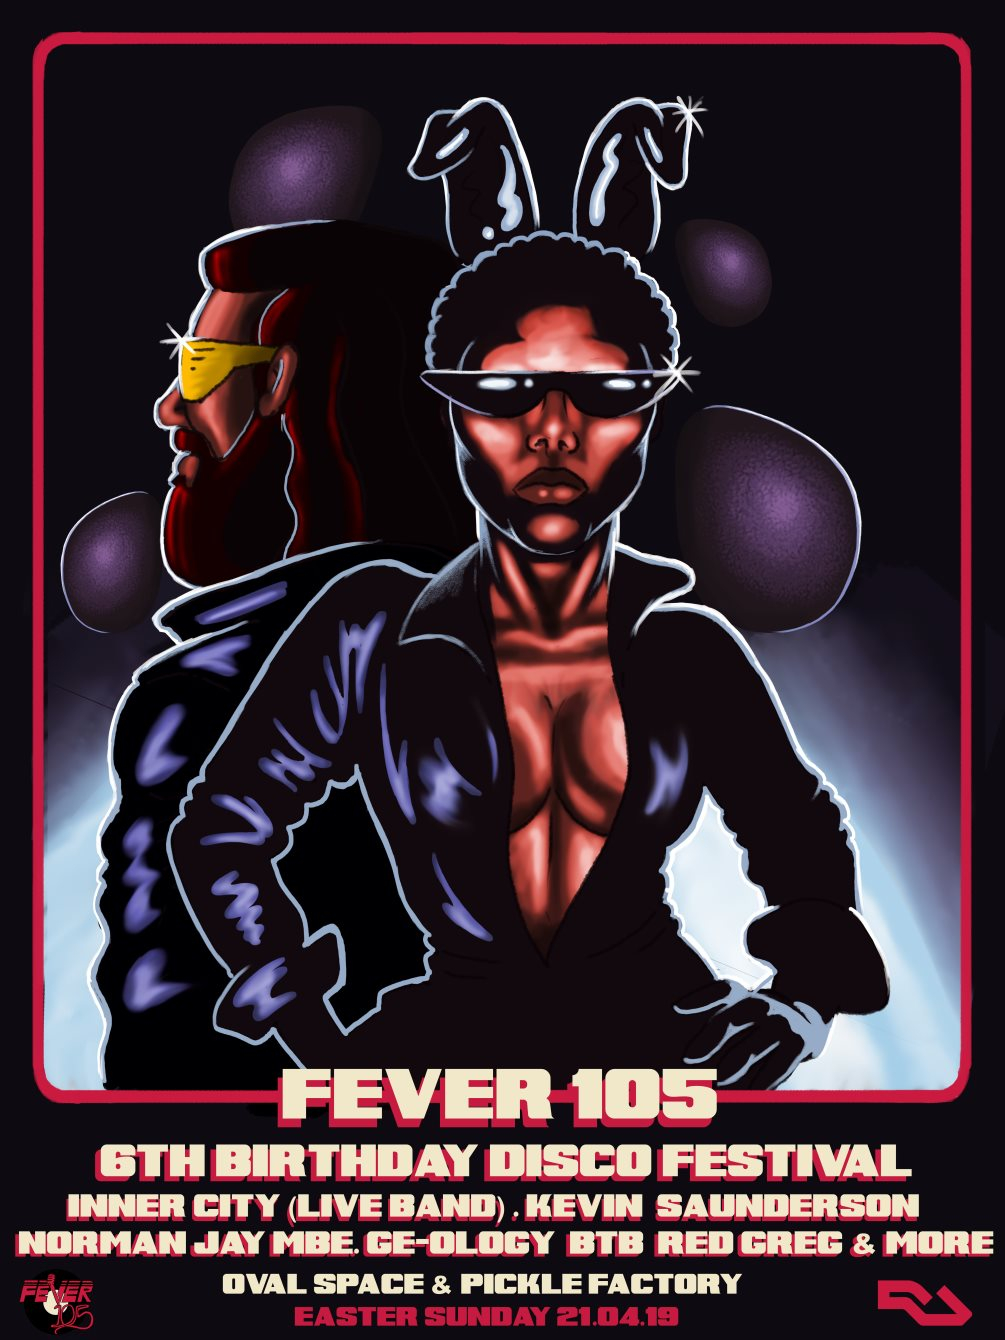 Easter Sunday Disco Festival & Fever 105 6th Birthday - Flyer back